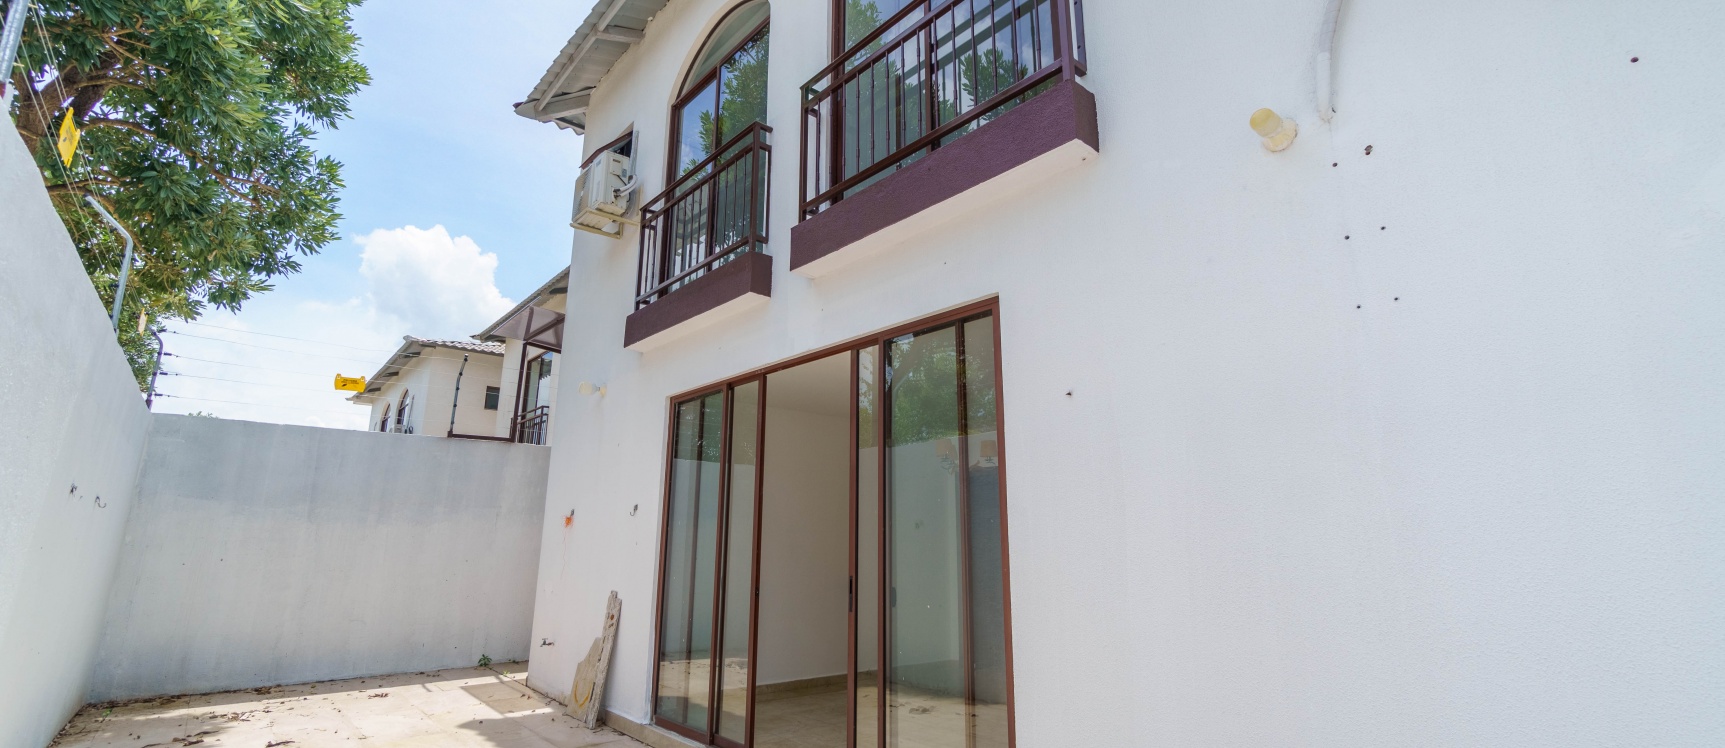 GeoBienes - Casa en alquiler ubicado en Urbanización Villas del Bosque, vía a la costa - Plusvalia Guayaquil Casas de venta y alquiler Inmobiliaria Ecuador